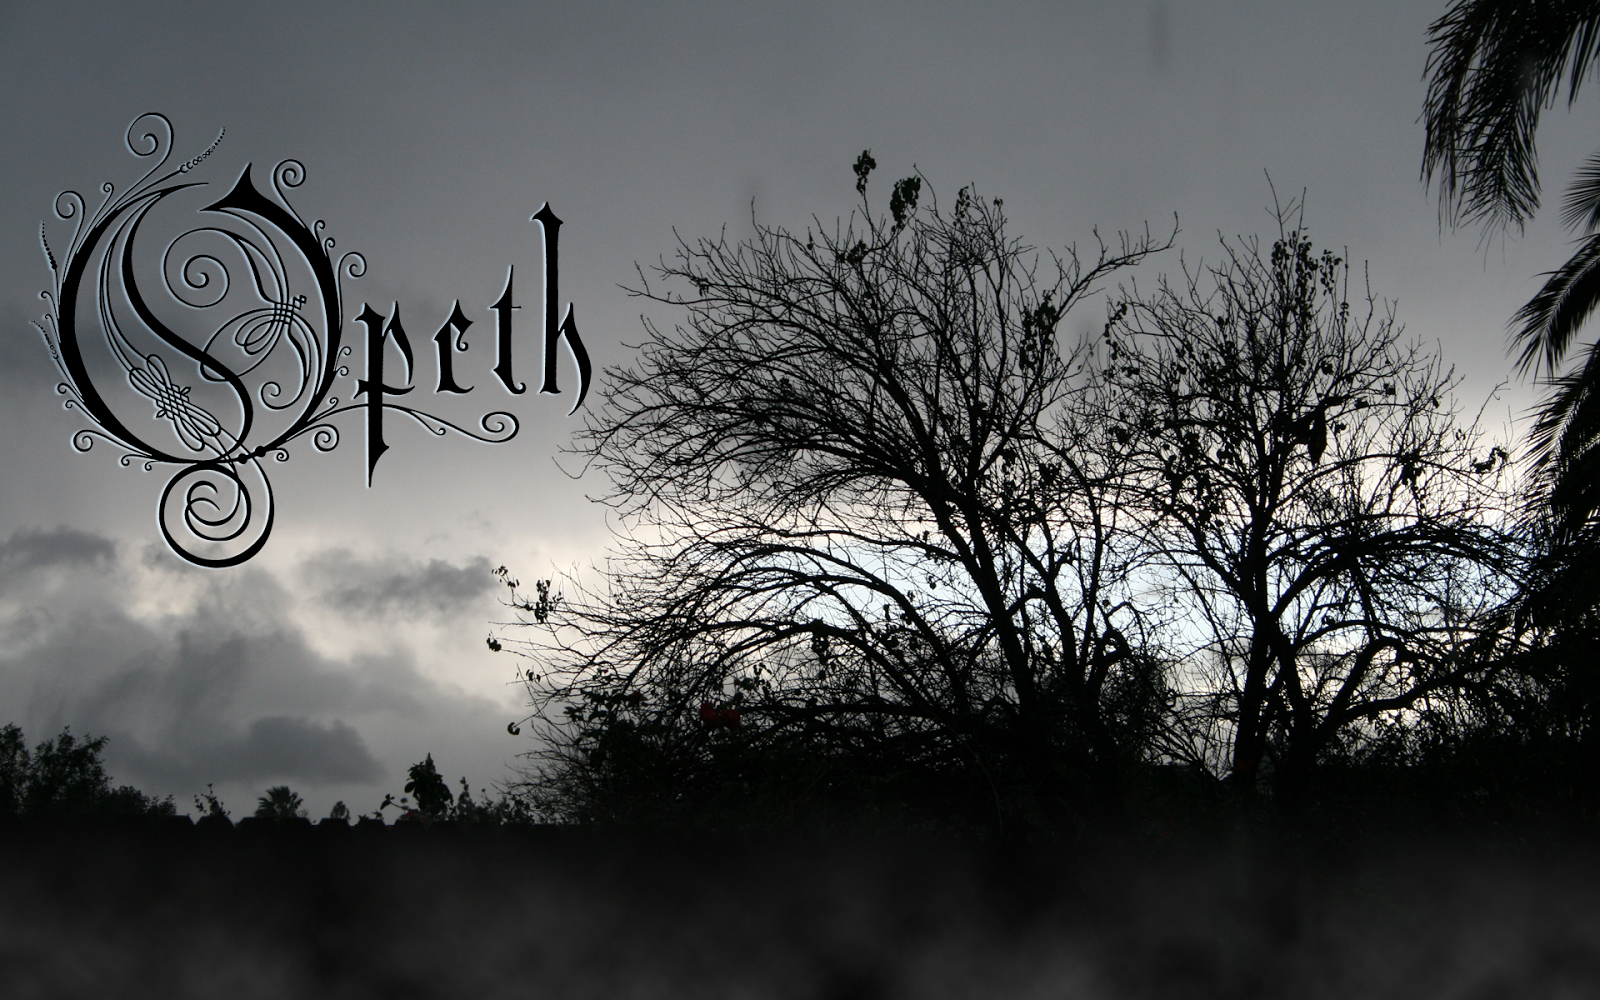 Opeth: 30 wallpapers gratis de la banda sueca | Fondos de ...